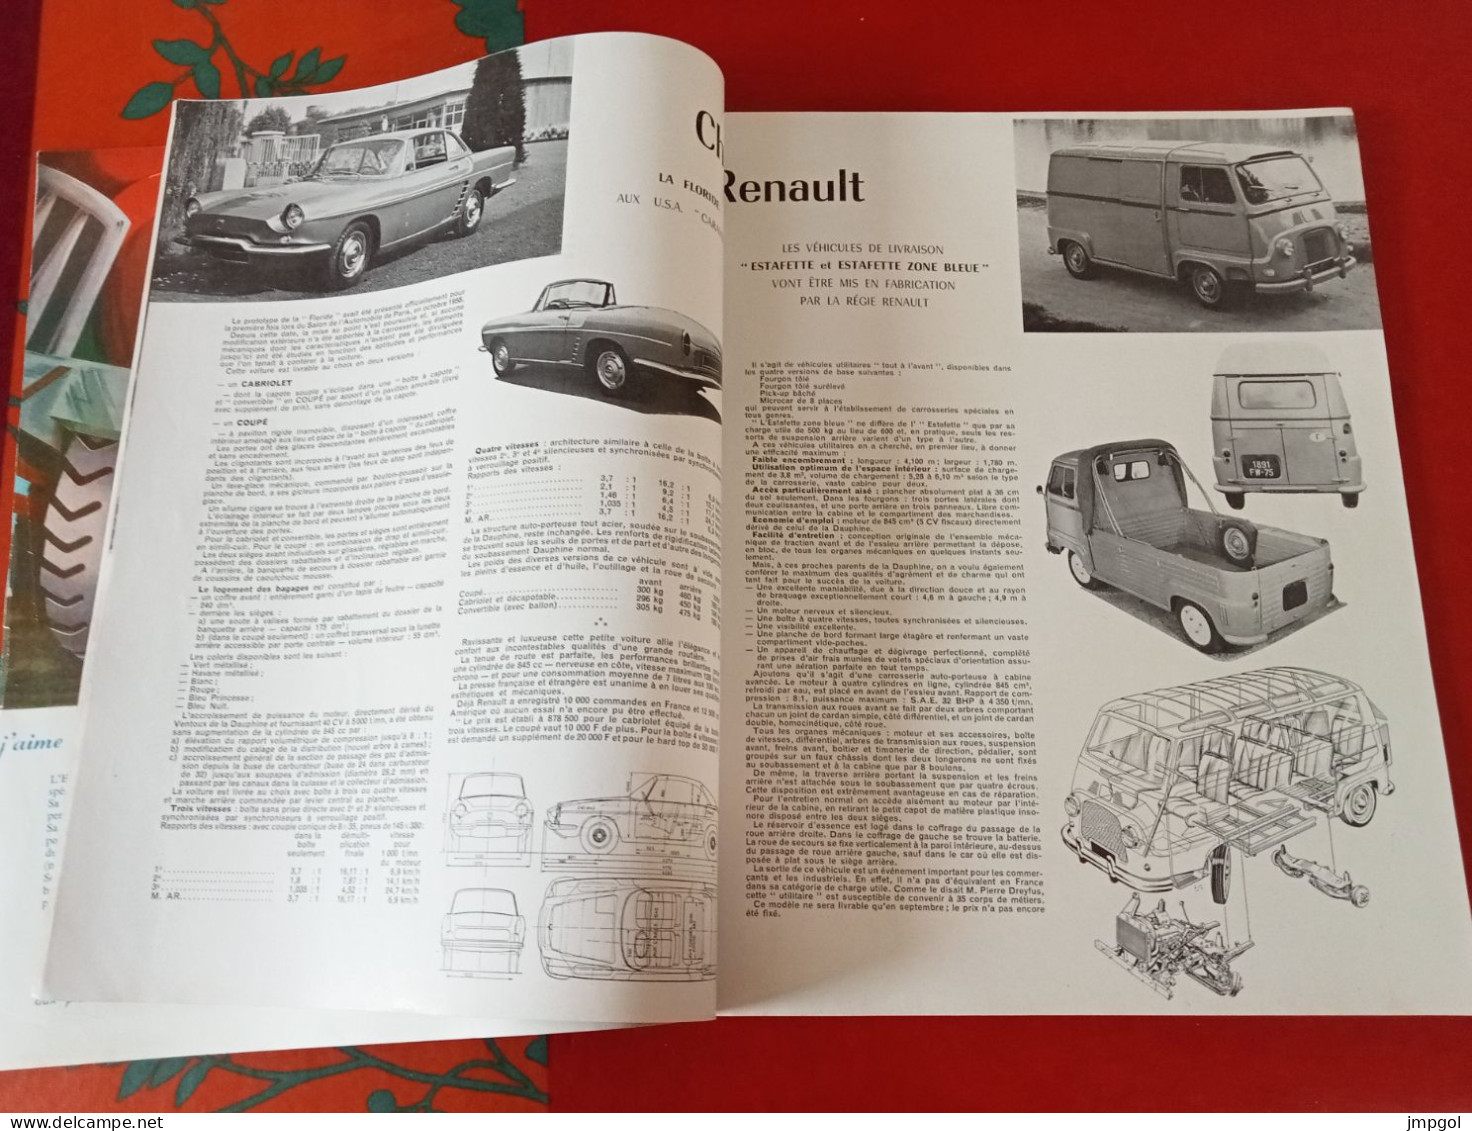 Englebert Magazine N°99 1959 Forez Bourbonnais Renault Floride Estafette Usine Gaz Lacq Pont Tancarville Moteur Diesel - Auto/Moto